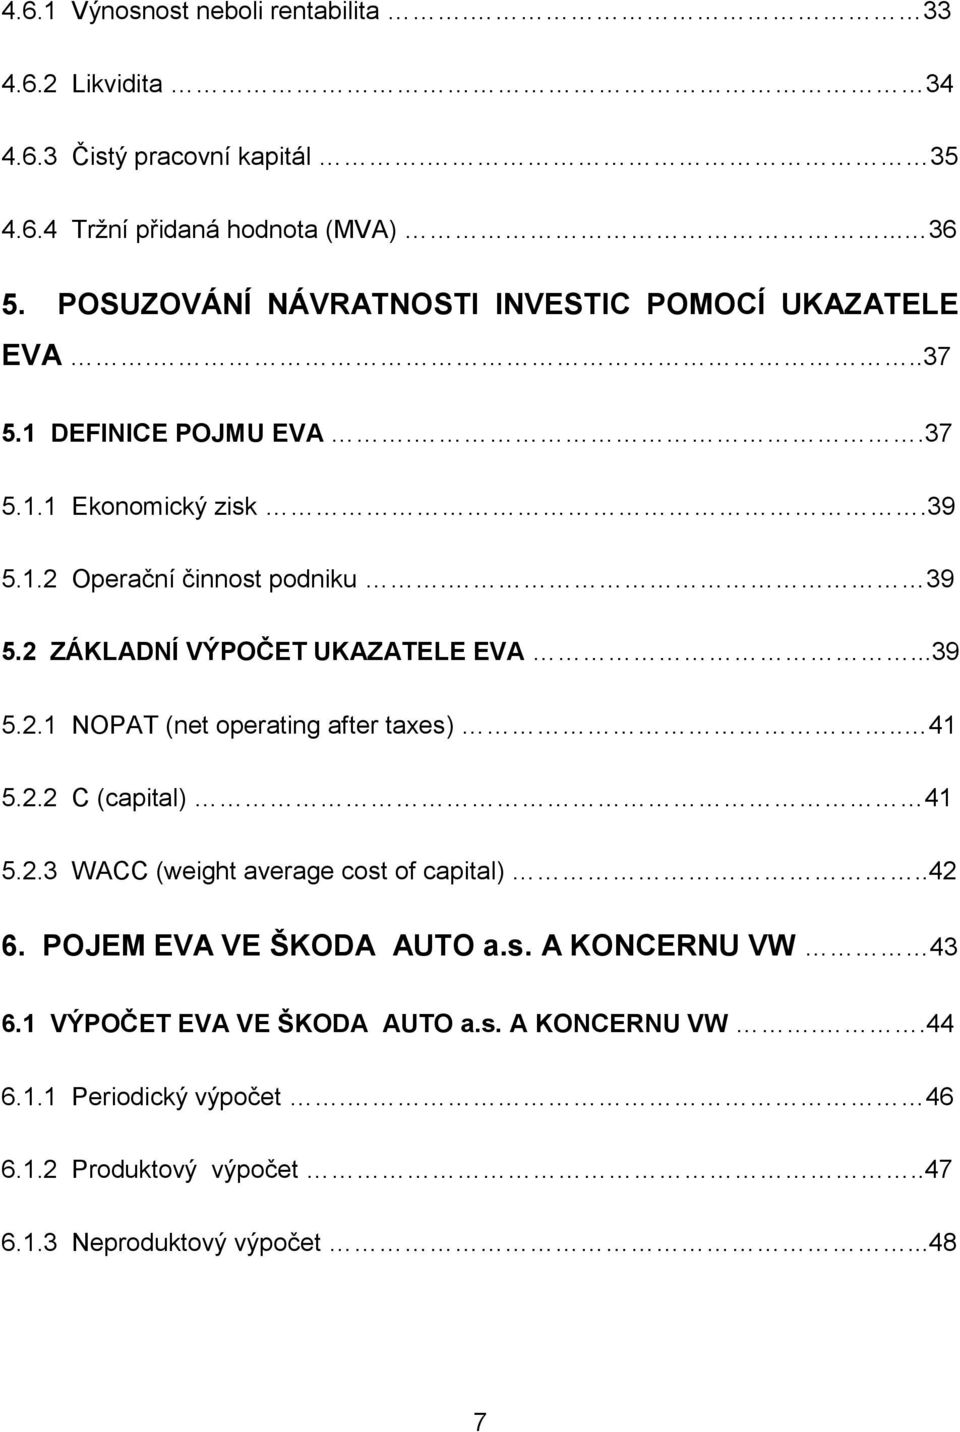 2 ZÁKLADNÍ VÝPOČET UKAZATELE EVA...39 5.2.1 NOPAT (net operating after taxes).. 41 5.2.2 C (capital) 41 5.2.3 WACC (weight average cost of capital)..42 6.